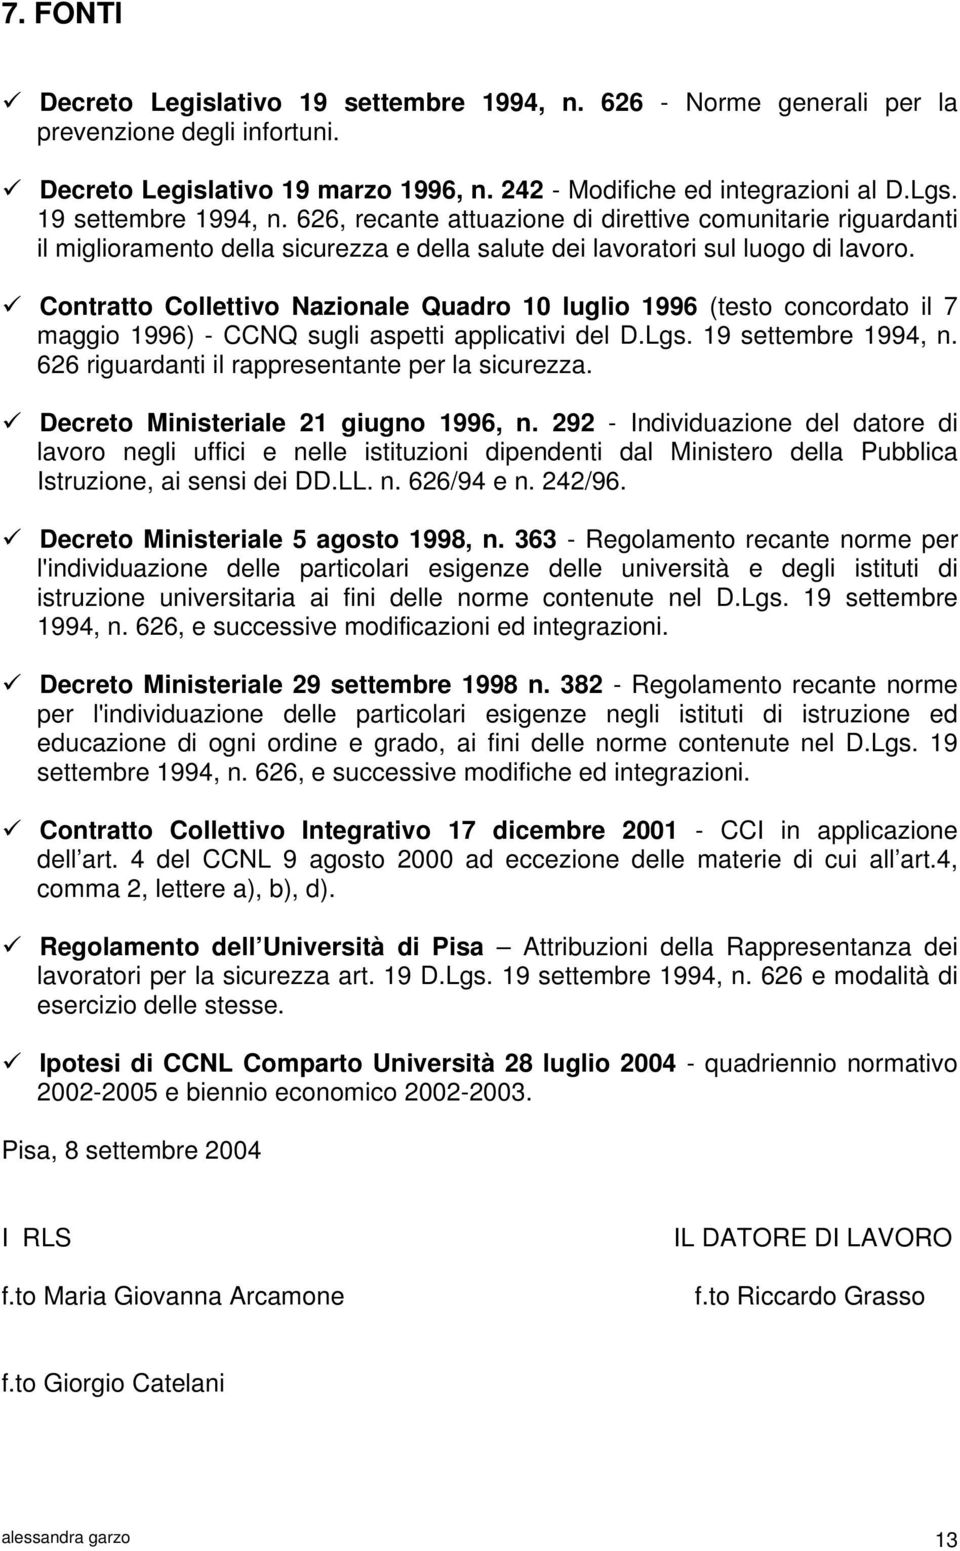 Contratto Collettivo Nazionale Quadro 10 luglio 1996 (testo concordato il 7 maggio 1996) - CCNQ sugli aspetti applicativi del D.Lgs. 19 settembre 1994, n.